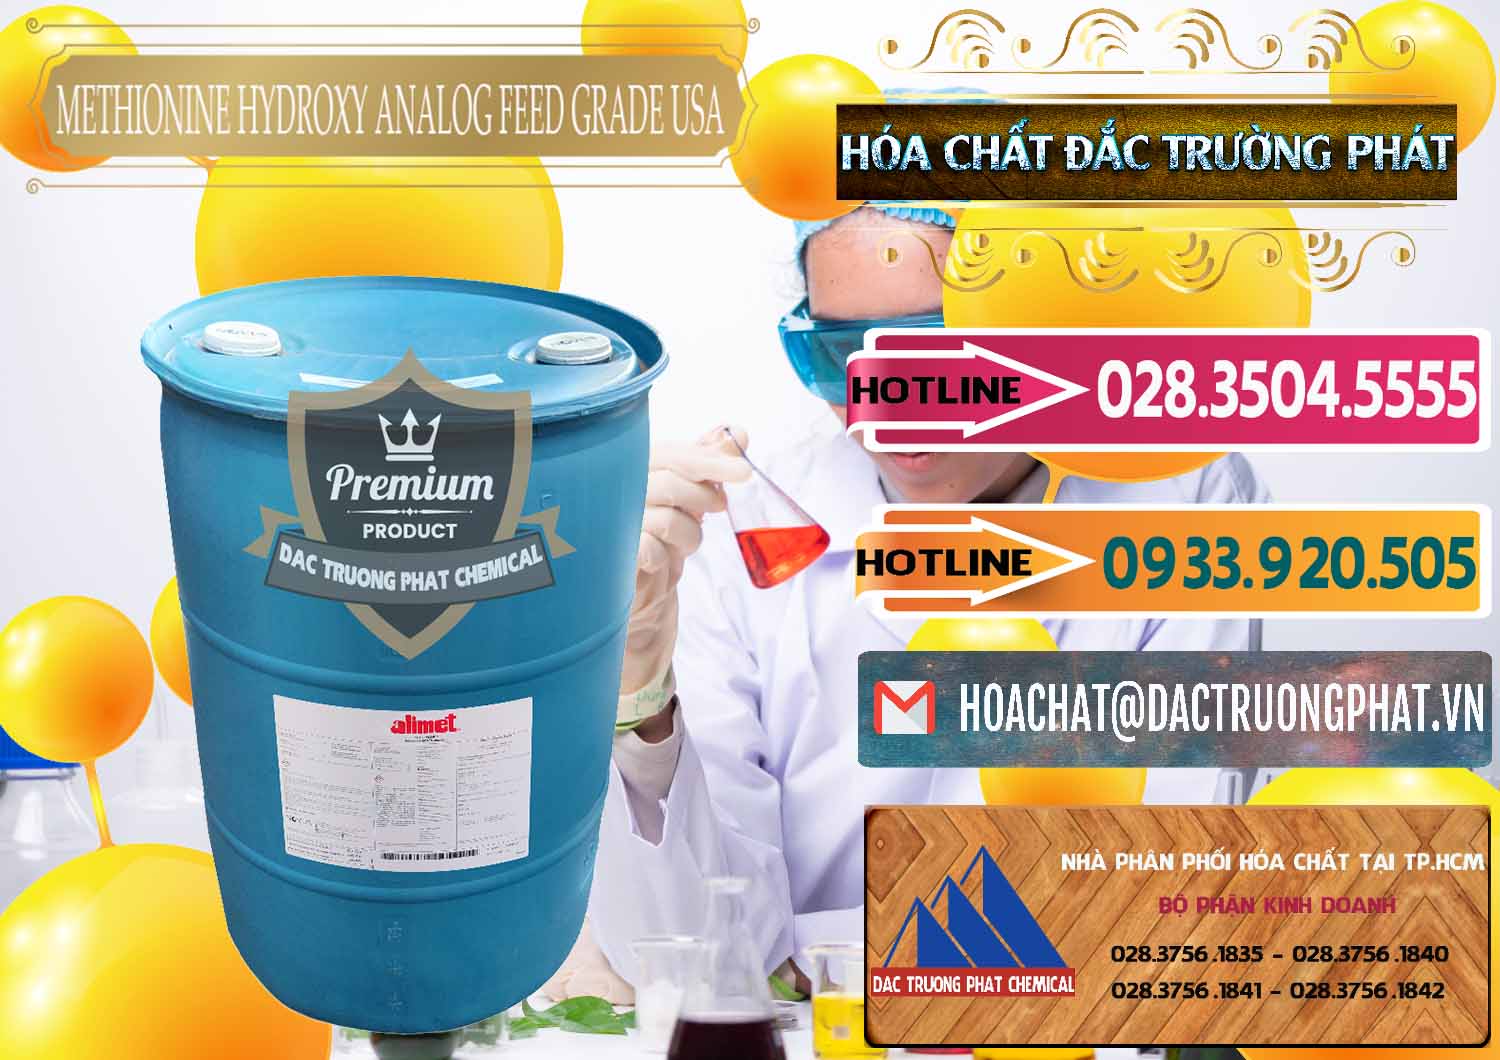 Cung cấp ( bán ) Methionine Nước - Dạng Lỏng Novus Alimet Mỹ USA - 0316 - Công ty chuyên cung ứng _ phân phối hóa chất tại TP.HCM - dactruongphat.vn